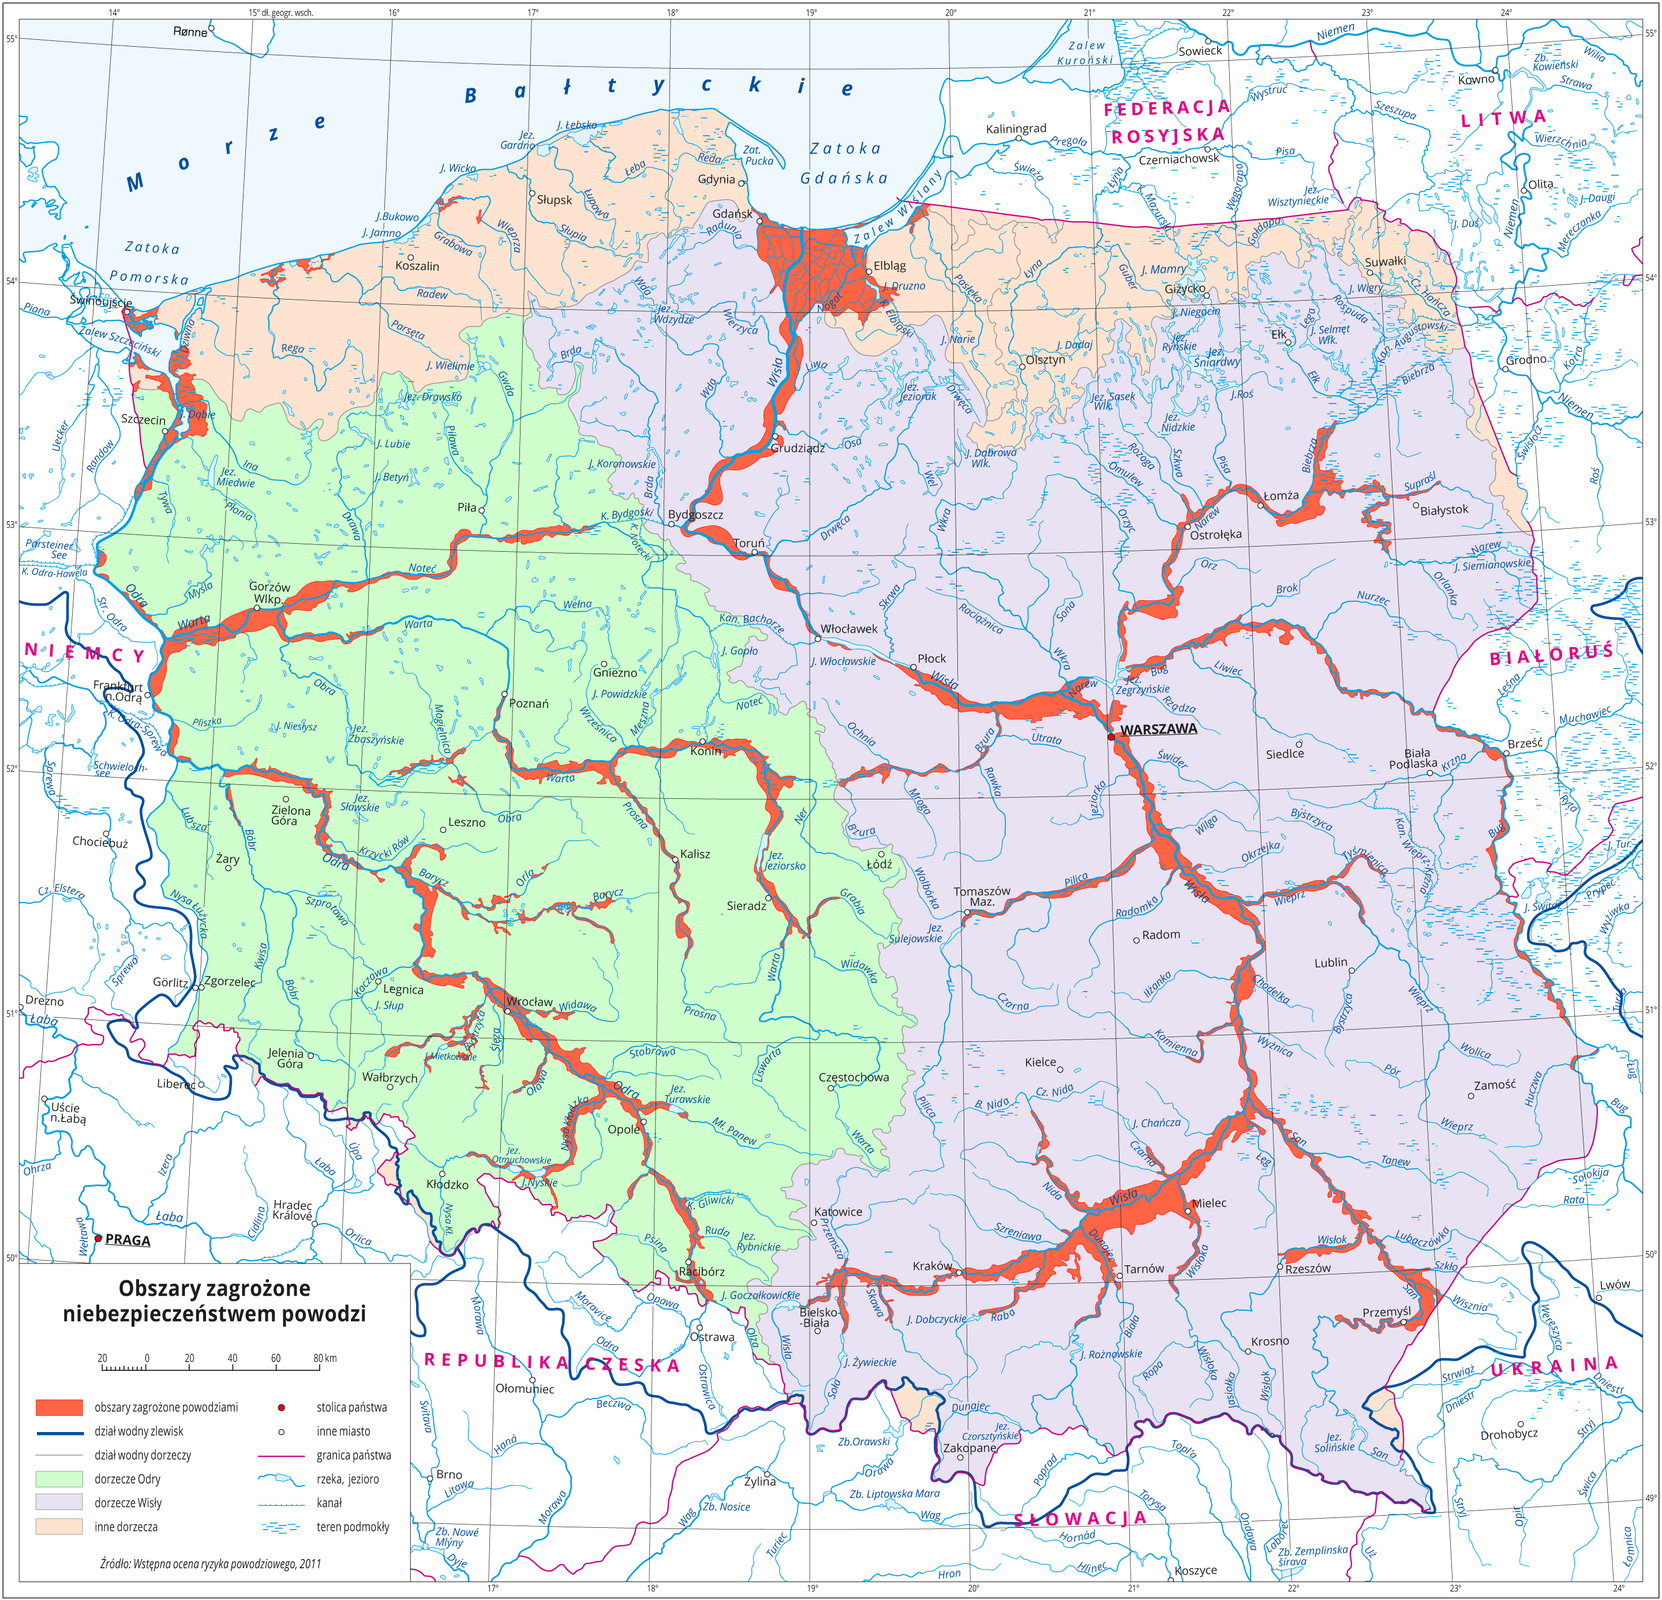 Mapa terenu Polski prezentująca obszary najbardziej zagrożone wystąpieniem zjawiska powodzi. Kraj został podzielony kolorami na obszary dorzeczy Wisły, Odry oraz innych rzek (głównie północ kraju), a miejsca szczególnie zagrożone wyróżniono czerwoną barwą. Obszary przyległe do koryt dwóch największych rzek kraju, a także wielu innych znajdują się w strefach zagrożenia powodziami. Tereny zagrożone powodziami to głównie obszary bezpośrednio sąsiadujące z Wisłą, Odrą, Sanem, Wisłokiem, Wieprzem, Pilicą, Wartą Prasną, Notecią, Narwią, Bugiem. Szczególnie duże obszary zalewowe występują na odcinku Opole-Wrocław, Kraków-Warszawa-Płock, Grudziądz-Gdańsk, okolice Szczecina, okolice Gorzowa Wielkopolskiego, okolice Konina.